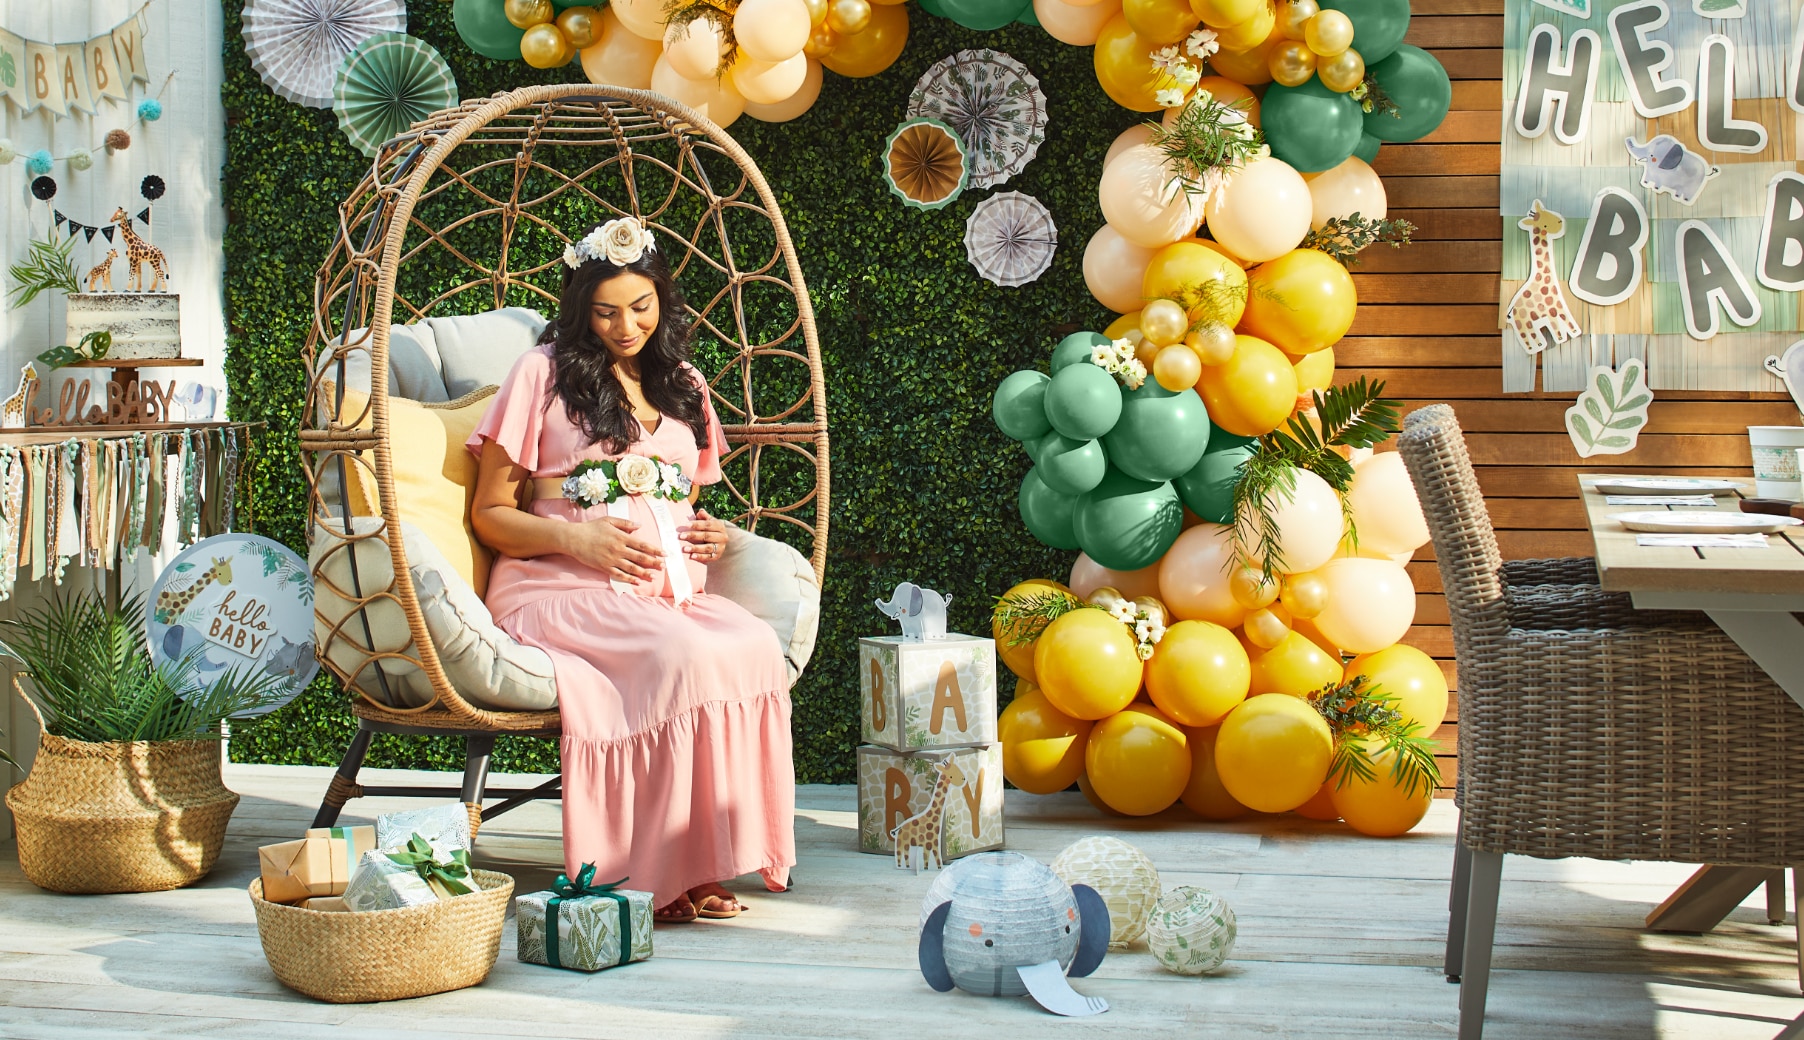 Une femme enceinte tenant son ventre assise sur une chaise sur une terrasse décorée d’une arche de ballons jaunes et verts, d’une banderole « Hello Baby », et de décorations à thème de jungle.